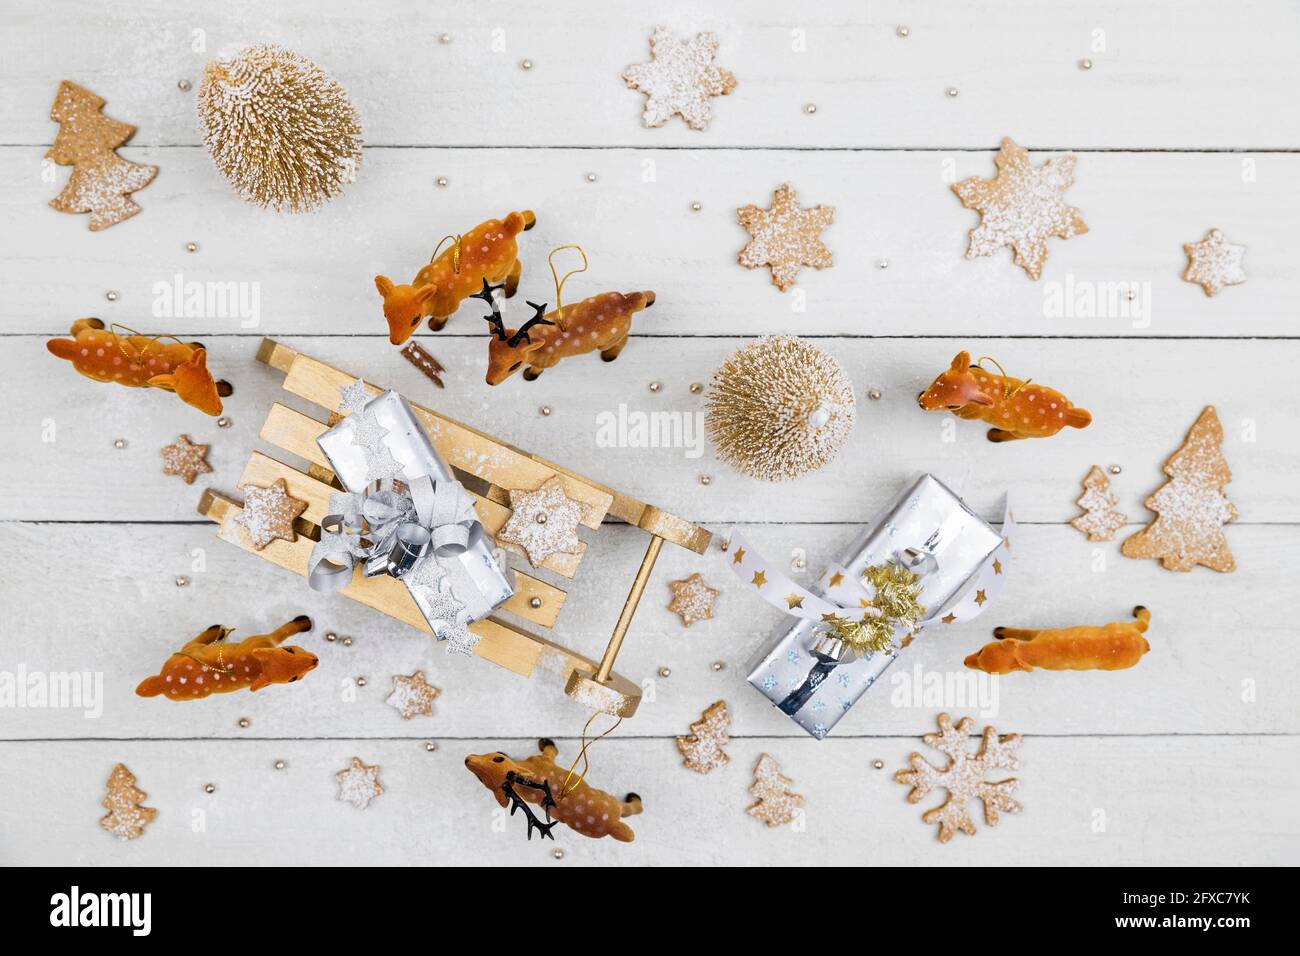 Regalos de Navidad y trineo de juguete rodeado de ciervos de juguete con galletas caseras sobre fondo blanco de madera Foto de stock